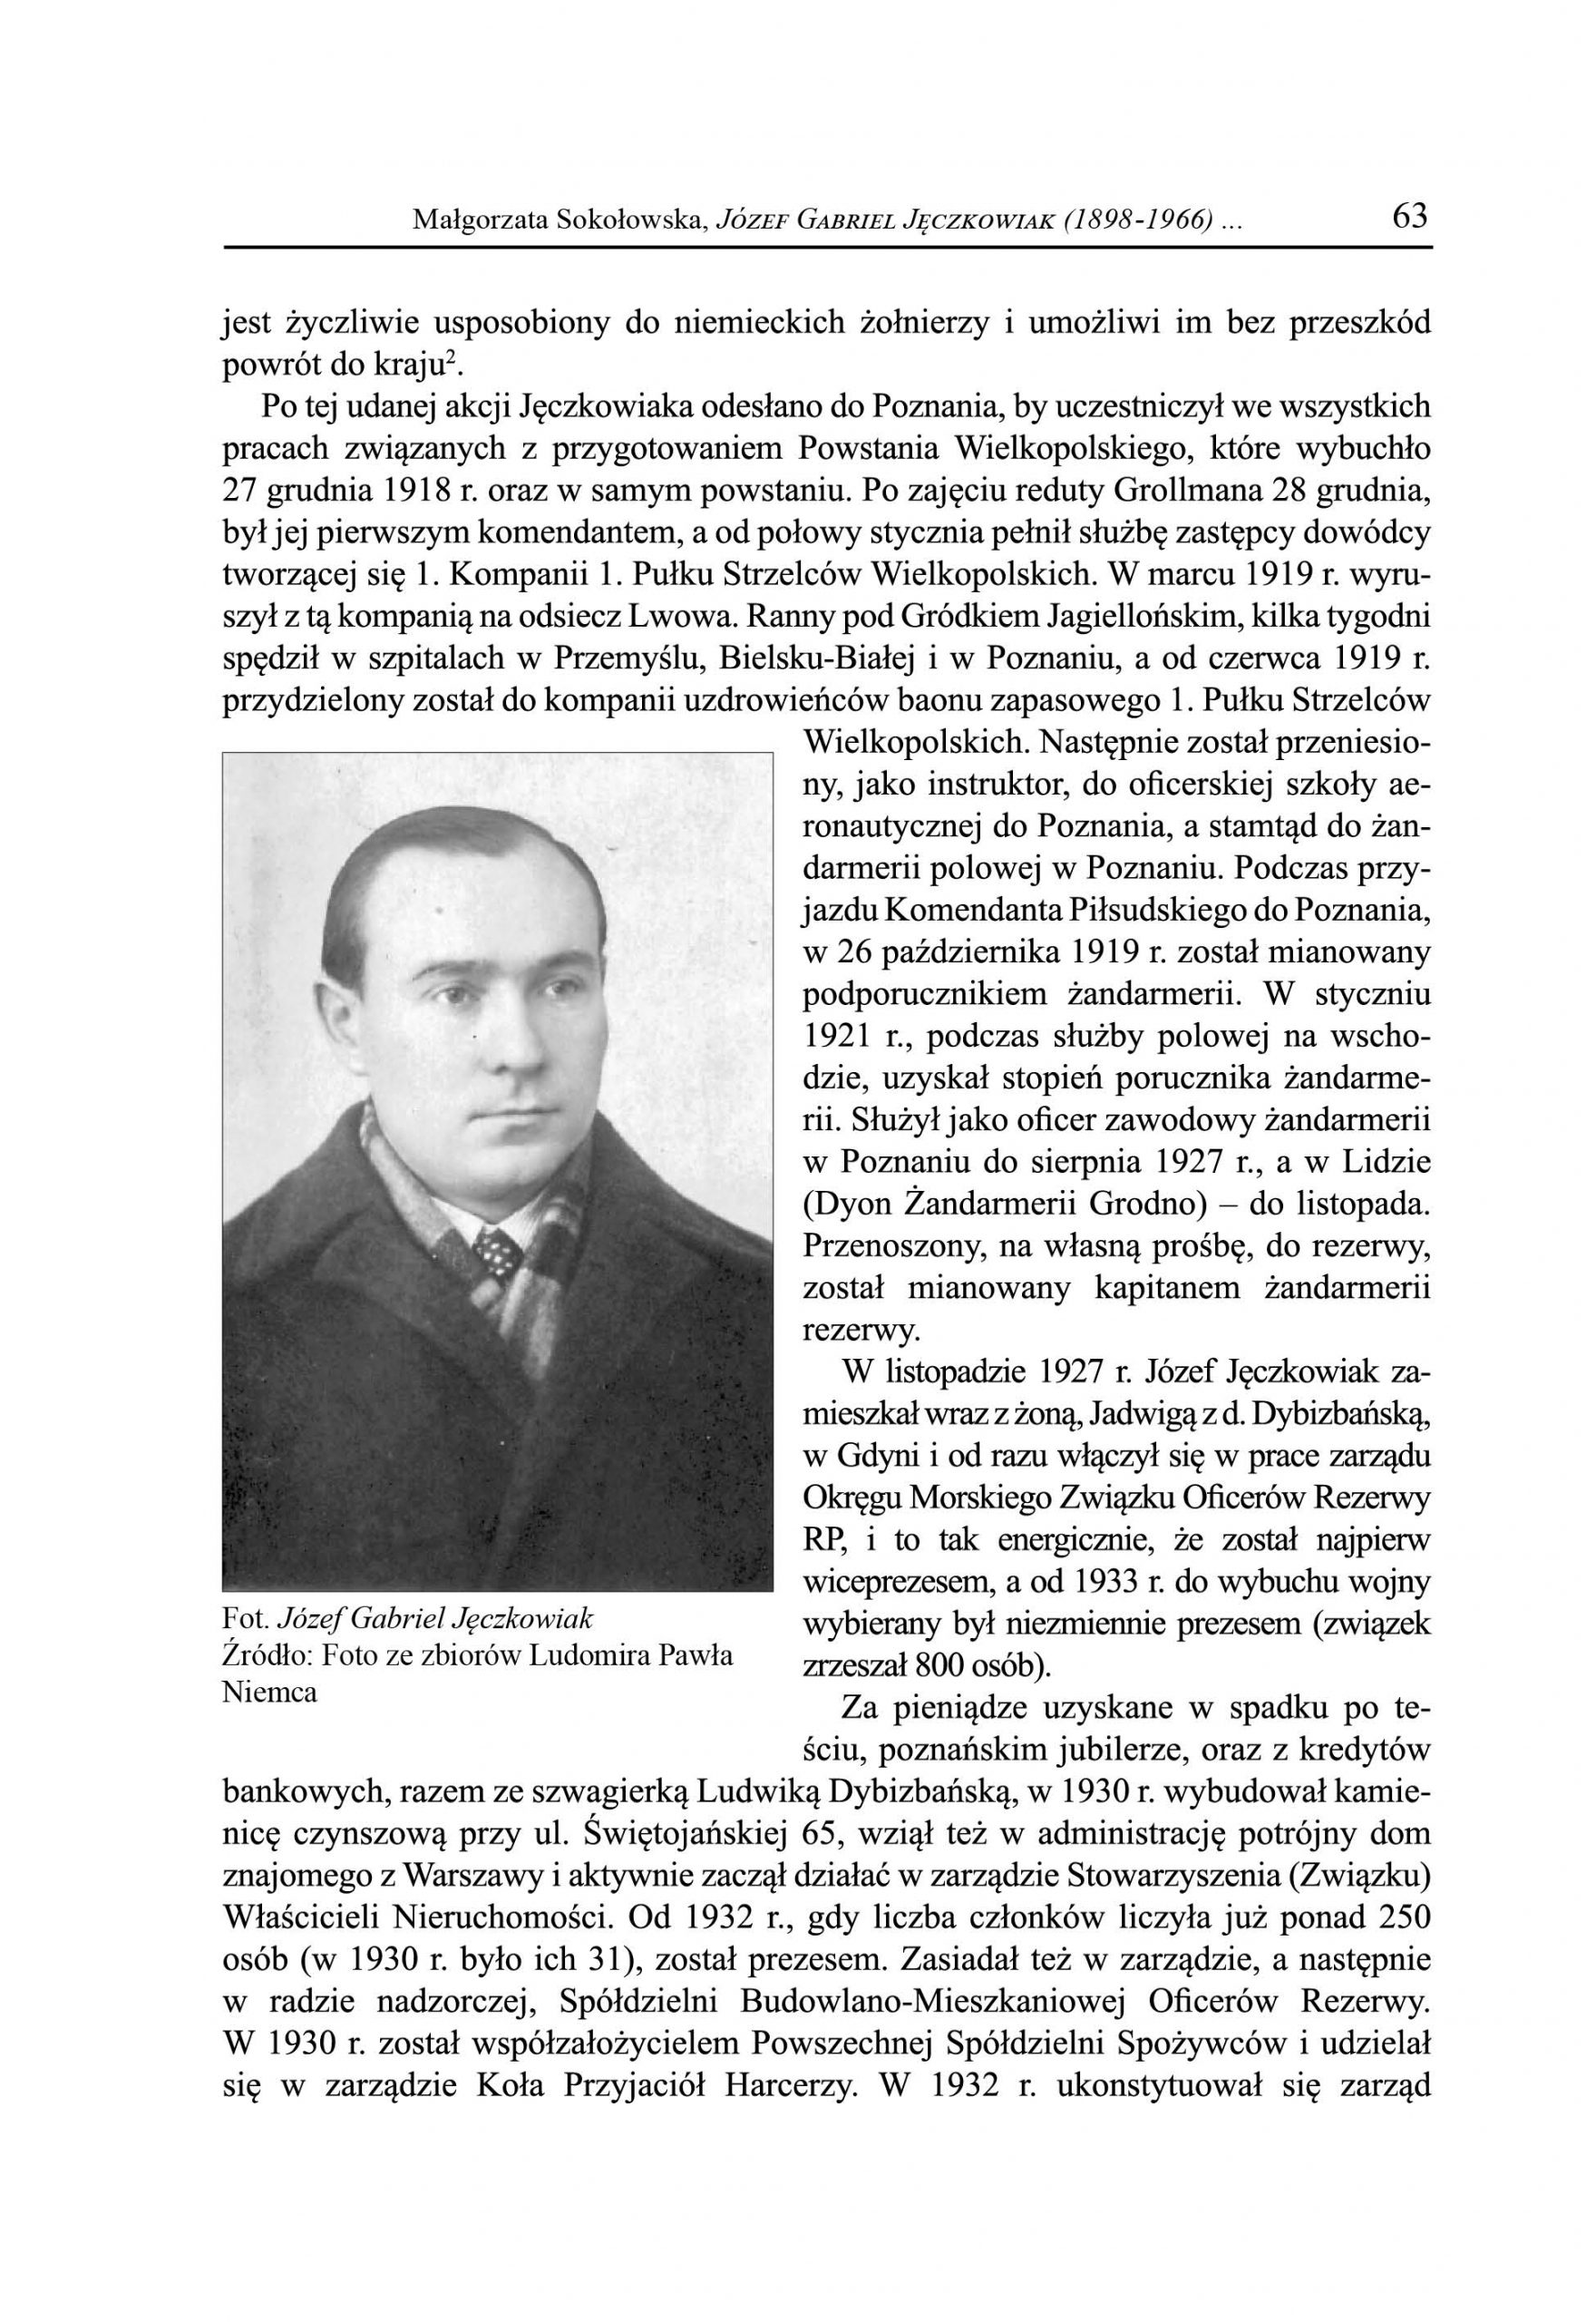 Józef Gabriel Jęczkowiak (1898-1966). Radny Miejski, prezes Koła Związku Oficerów Rezerwy